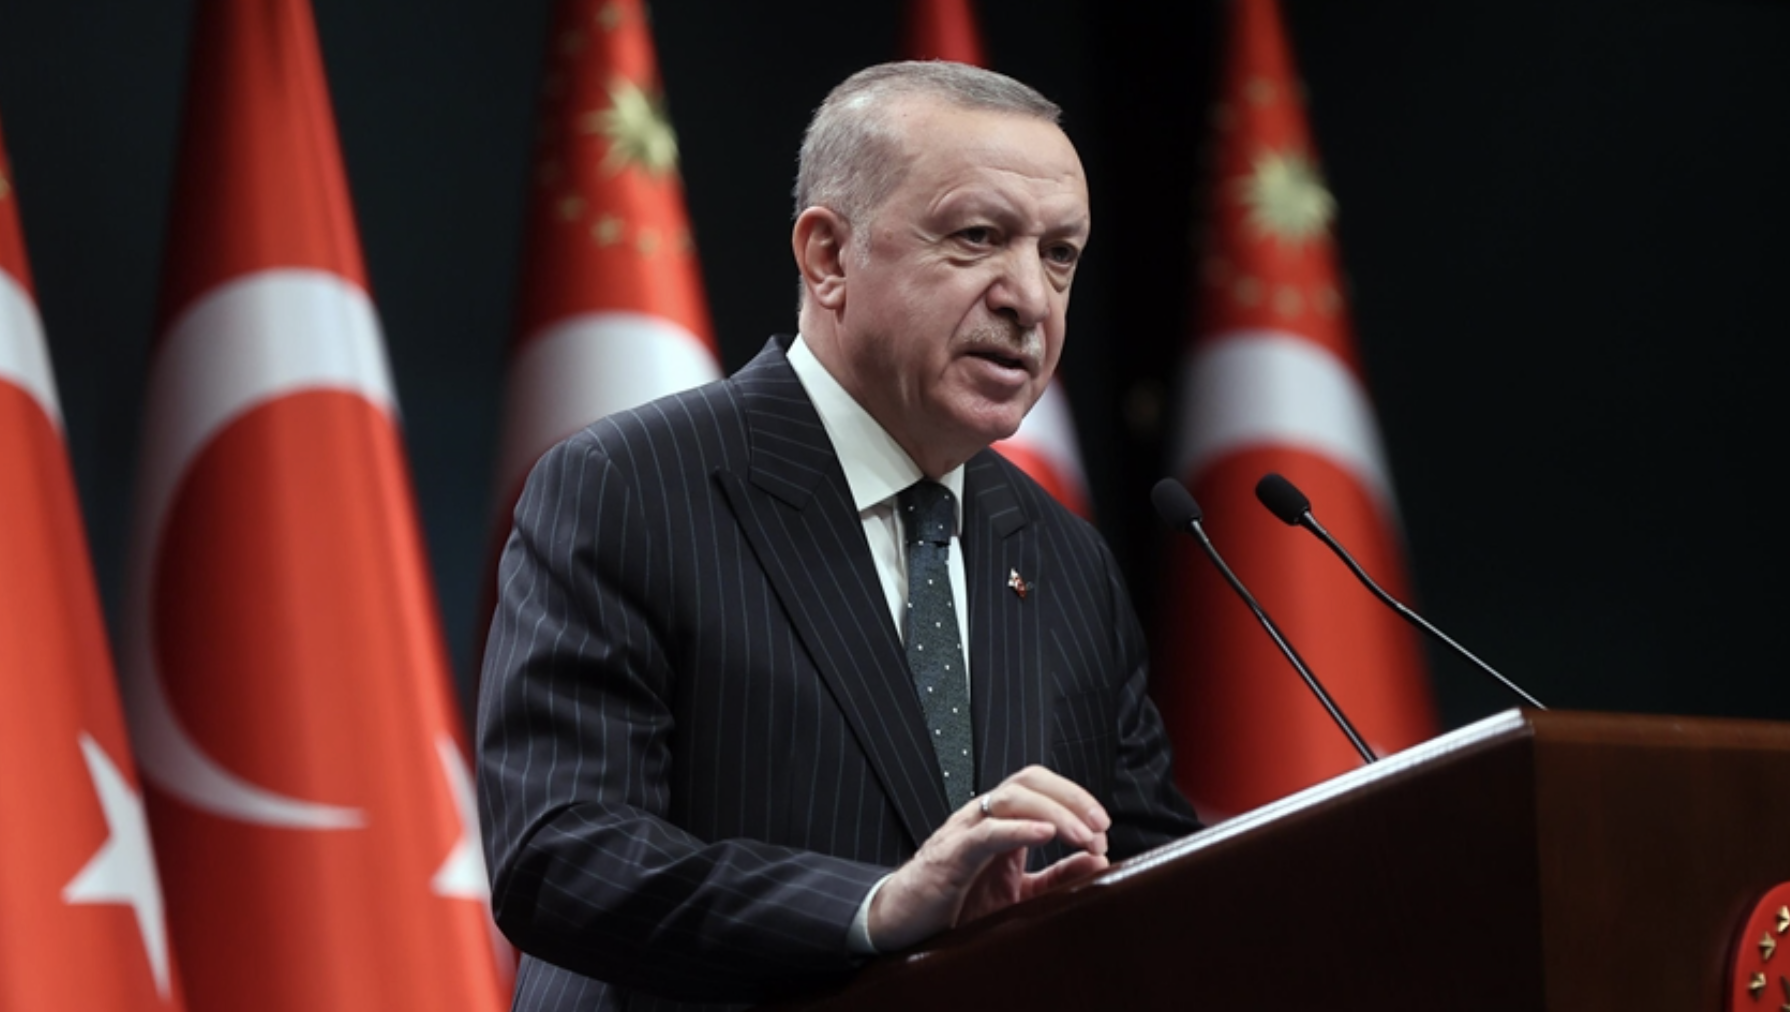 Τουρκία: Για ΕΕ, Λιβύη, Τουρκικό Συμβούλιο και τα νέα περιοριστικά μέτρα, αναφέρθηκε ο Erdogan με το τέλος του Υπουργικού Συμβουλίου